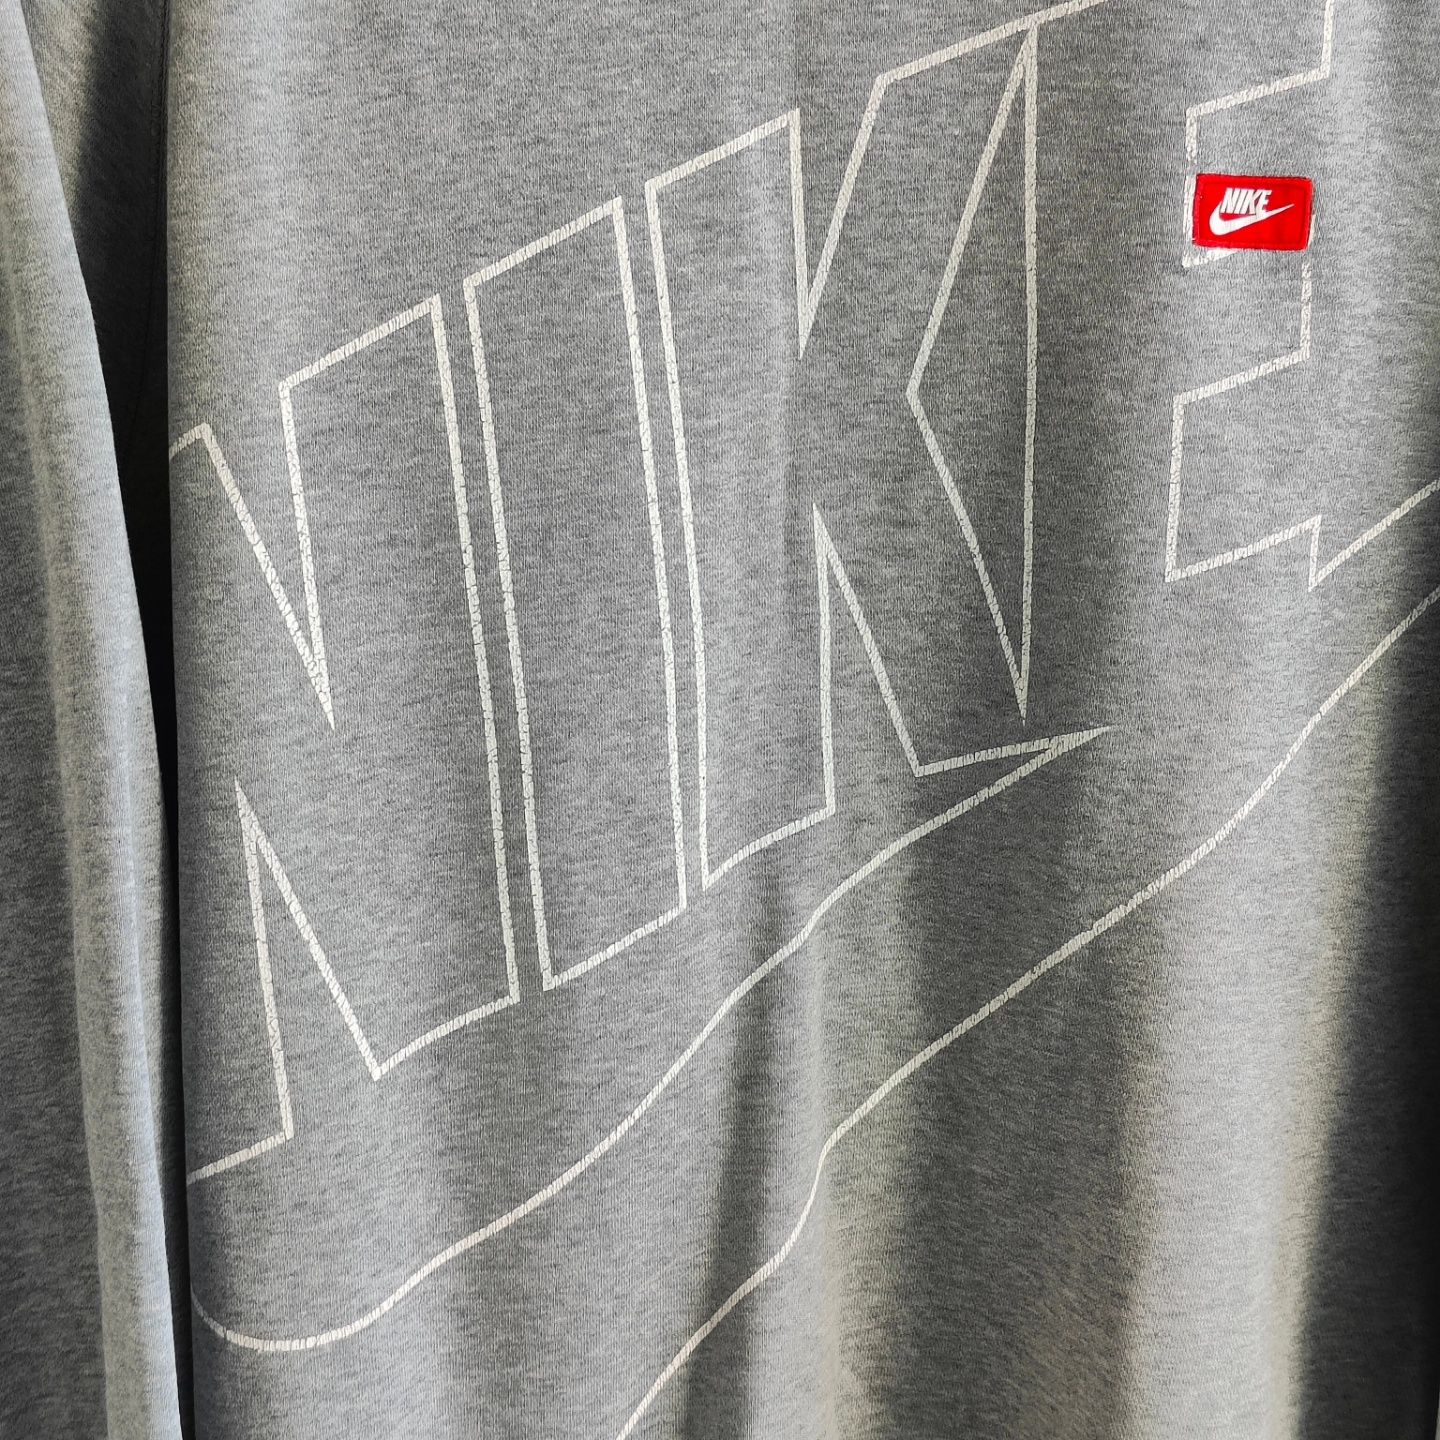 Bluza Nike marime XXL